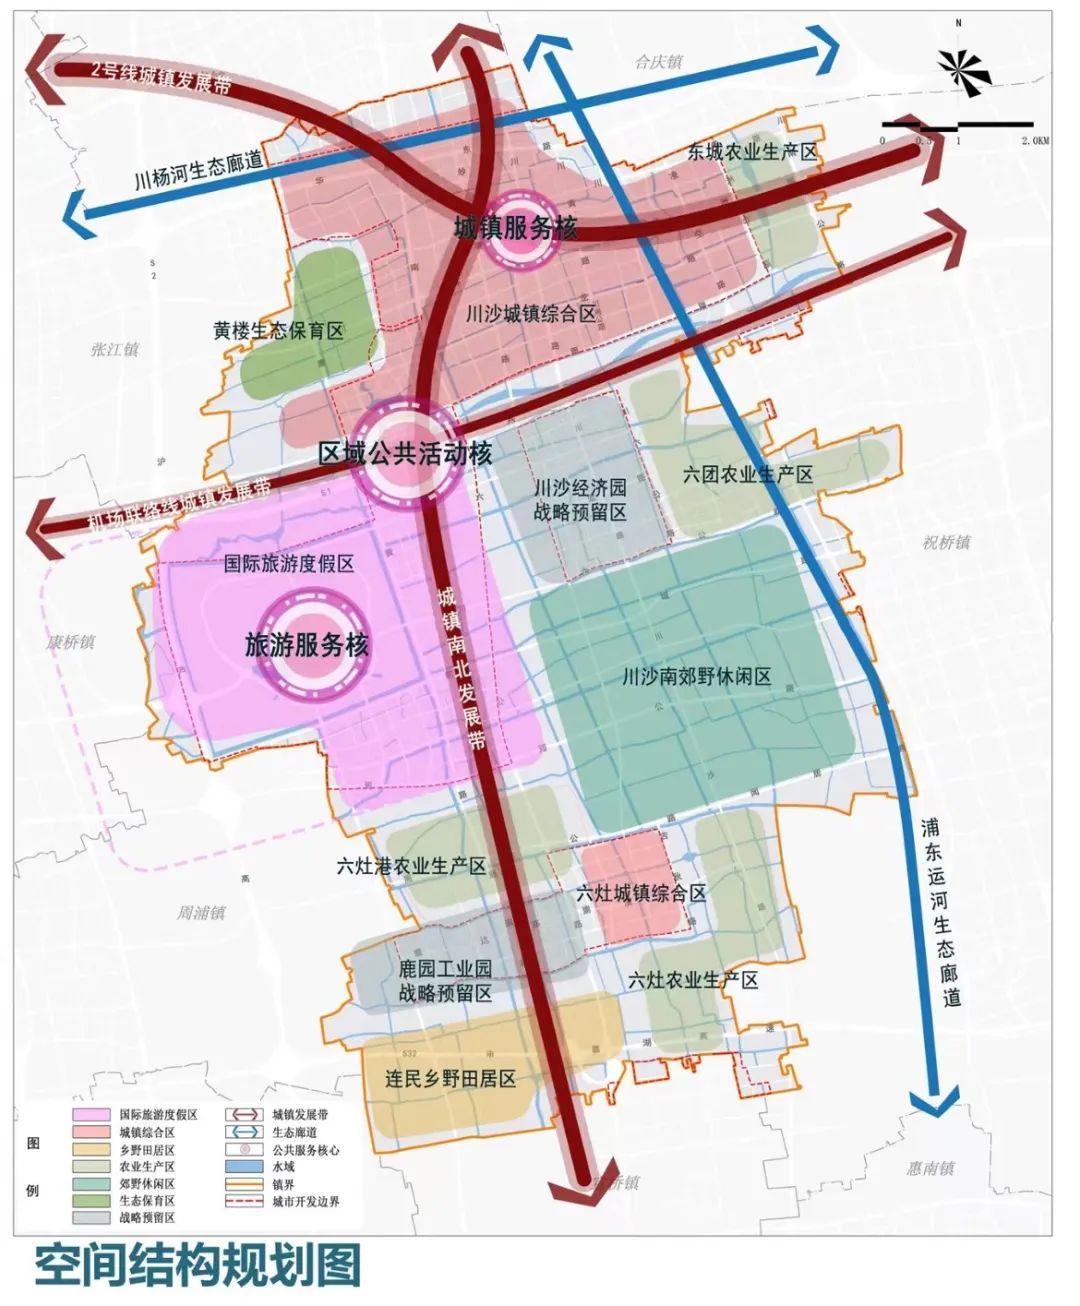 公示打造浦东中部地区活力高地来看这个镇国土空间总体规划